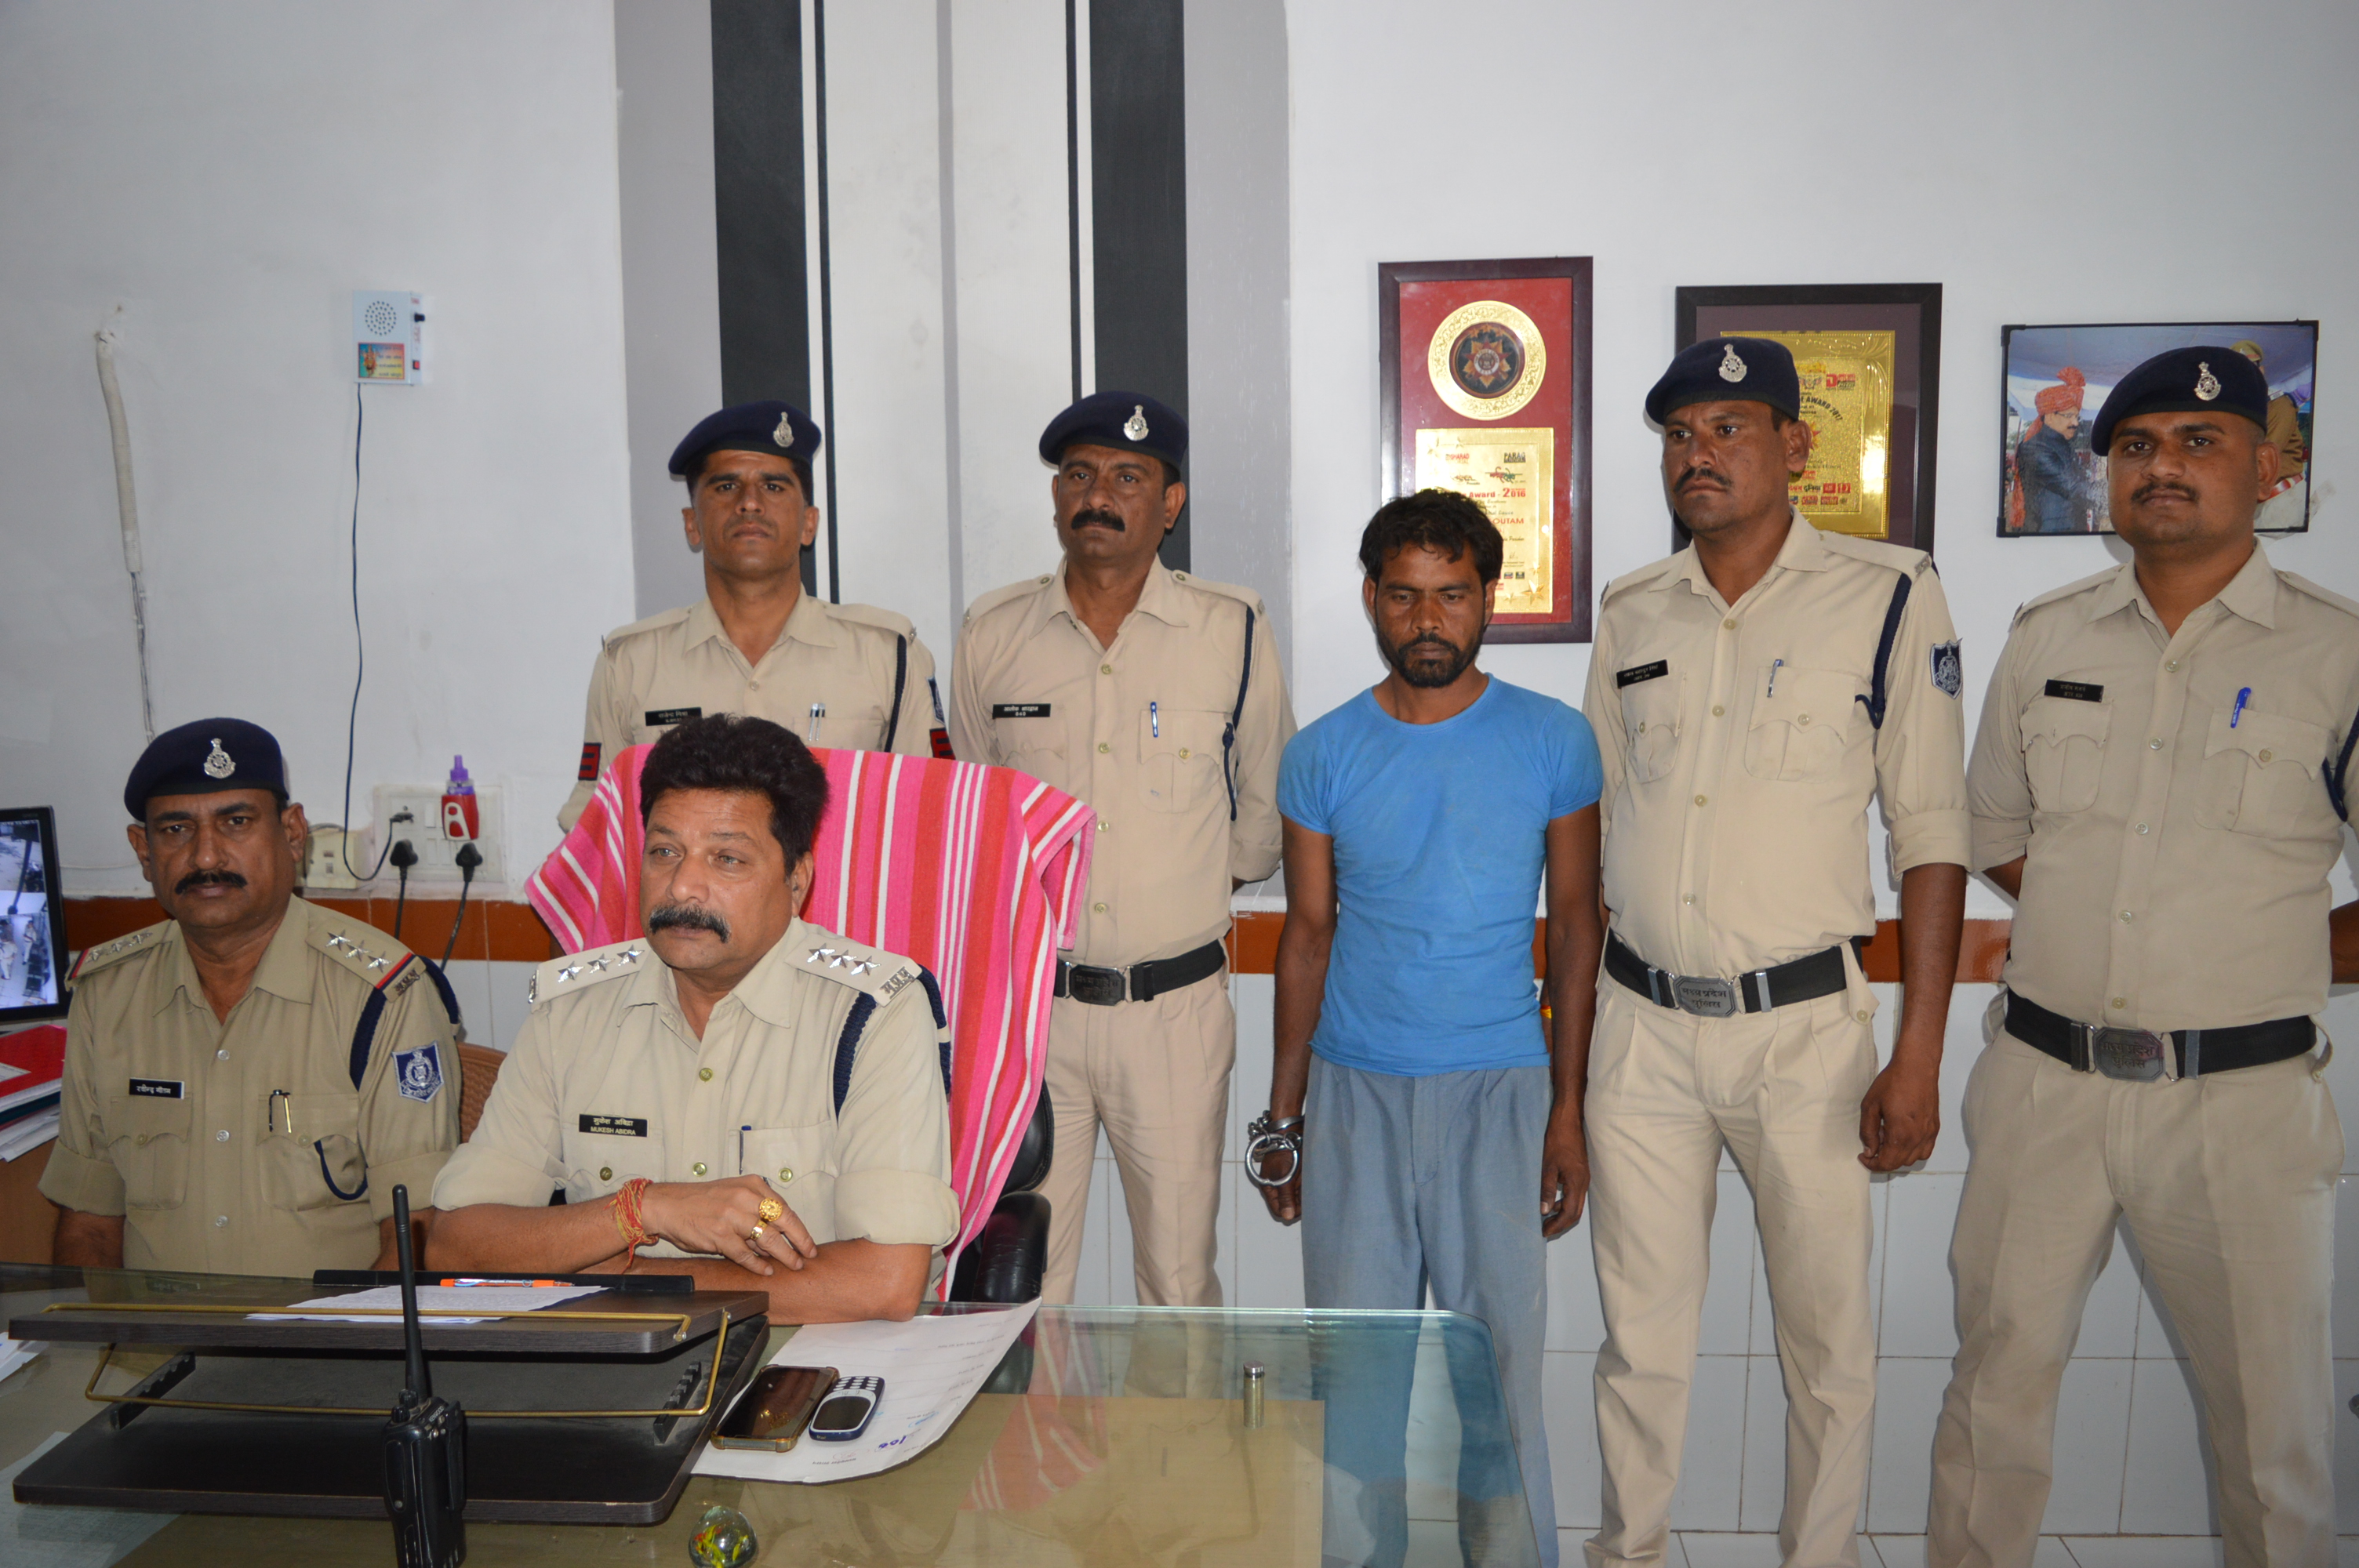 10 साल से फ रार स्थाई वारंटी गिरफ्तार  जिले भर में फरार वारंटियों को गिरफ्तार किए जाने का विशेष अभियान चलाया जा रहा है। जिसमें एसपी विवेक सिंह के निर्देशन में बनाई गई विशेष टीम प्रभारी एसआई सत्येंद्र सिंह राजपूत ने अपनी टीम के साथ १० साल से फरार दो स्थाइ वारंटियों को गिरफ्तार किया है। सत्येंद्र सिंह ने बताया कि आरोपी नन्नू उर्फ  बसीर खान पिता रज्जाक खान निवासी पथरिया के विरूद्ध माननीय न्यायालय ने अपराध क्रमांक 384/04 धारा 324,  294 में व 2008 के मामले में स्थाई वारंट जारी किए थे। घटना के बाद से आरोपी 10 सालों से लगातार फरार चल रहा था। जिसे सोमवार को टीम के सदस्य प्रधान आरक्षक 636 संतोष तिवारी, आरक्षक 77 जितेंद्र यादव, आरक्षक रोहित राजपूत, सैनिक64 राकेश बबलू दुबे एवं सायबर सेल प्रभारी राकेश अठया, सौरभ टंडन, अजीत दुबे की मेहनत से गिरफ्तार किया गया है।    